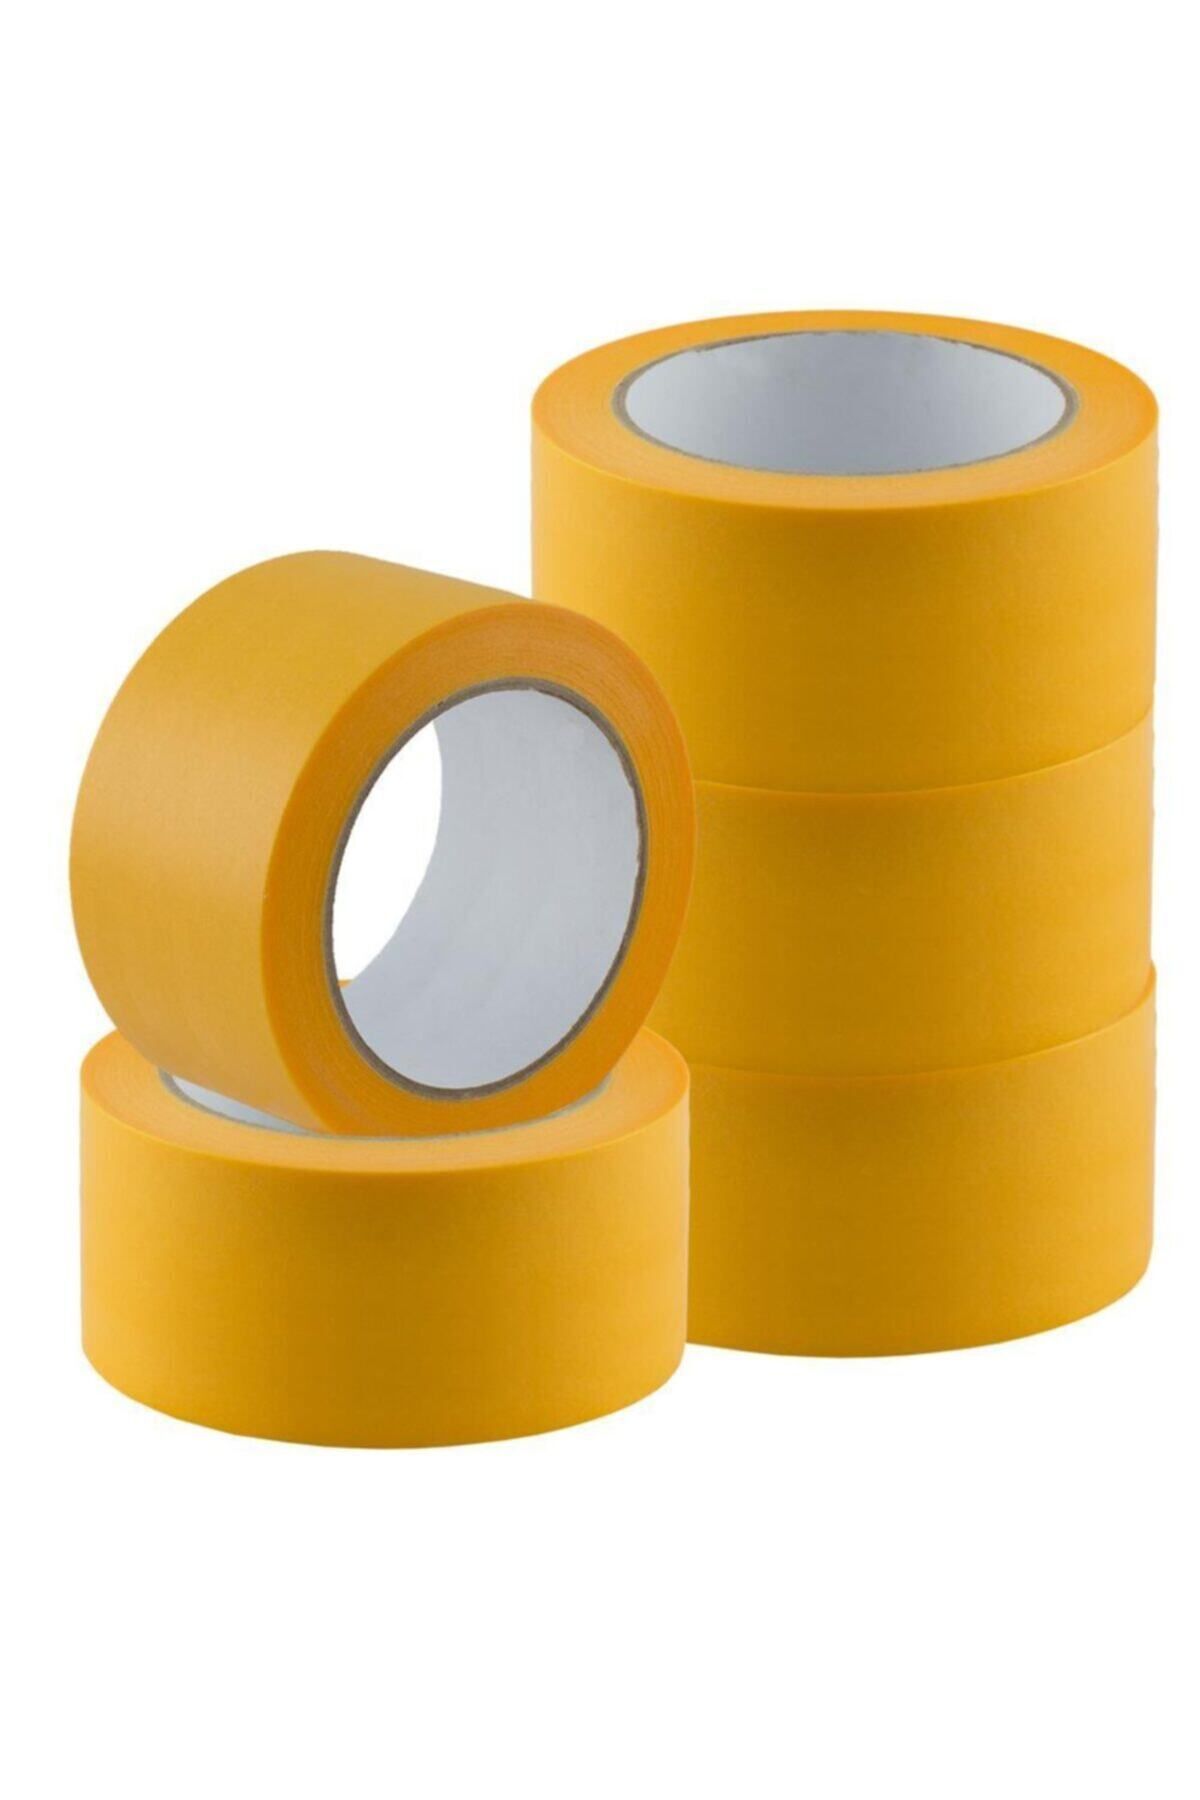 NewVario Washı Tape Gold Maskeleme Bandı 50 Mm X 50 Metre 2 Adet